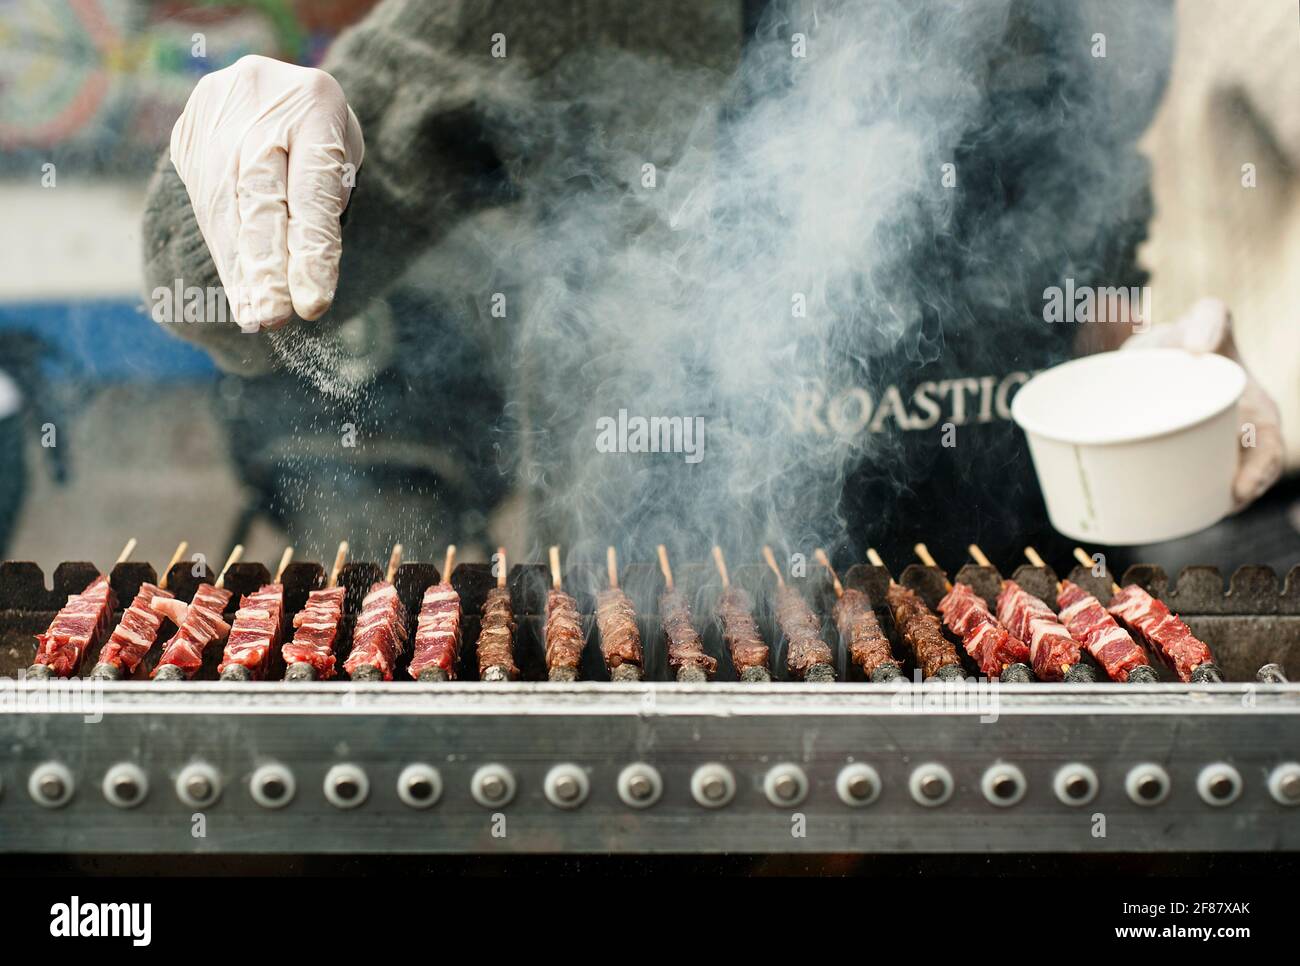 Primo piano degli spiedini in stile kebab per la salatura delle mani. Tostatura di carne su una macchina barbecue in un pop-up mercato alimentare. Brick Lane, Londra, Regno Unito. Apr 2014 Foto Stock